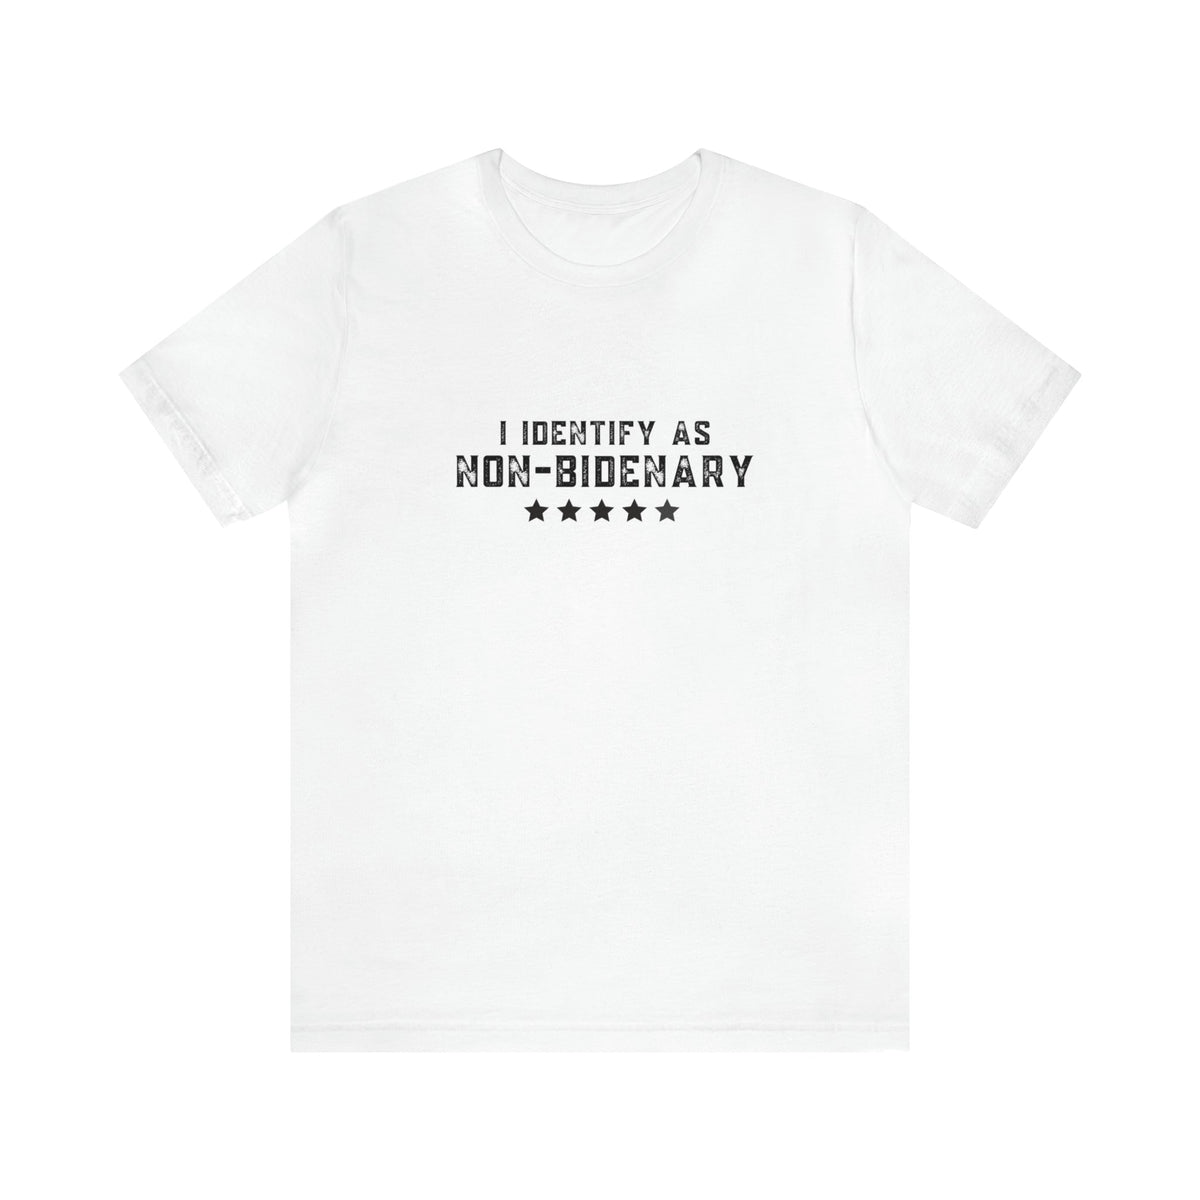 T-Shirt White / M Non-Bidenary Unisex Jersey Short Sleeve Graphic Tee